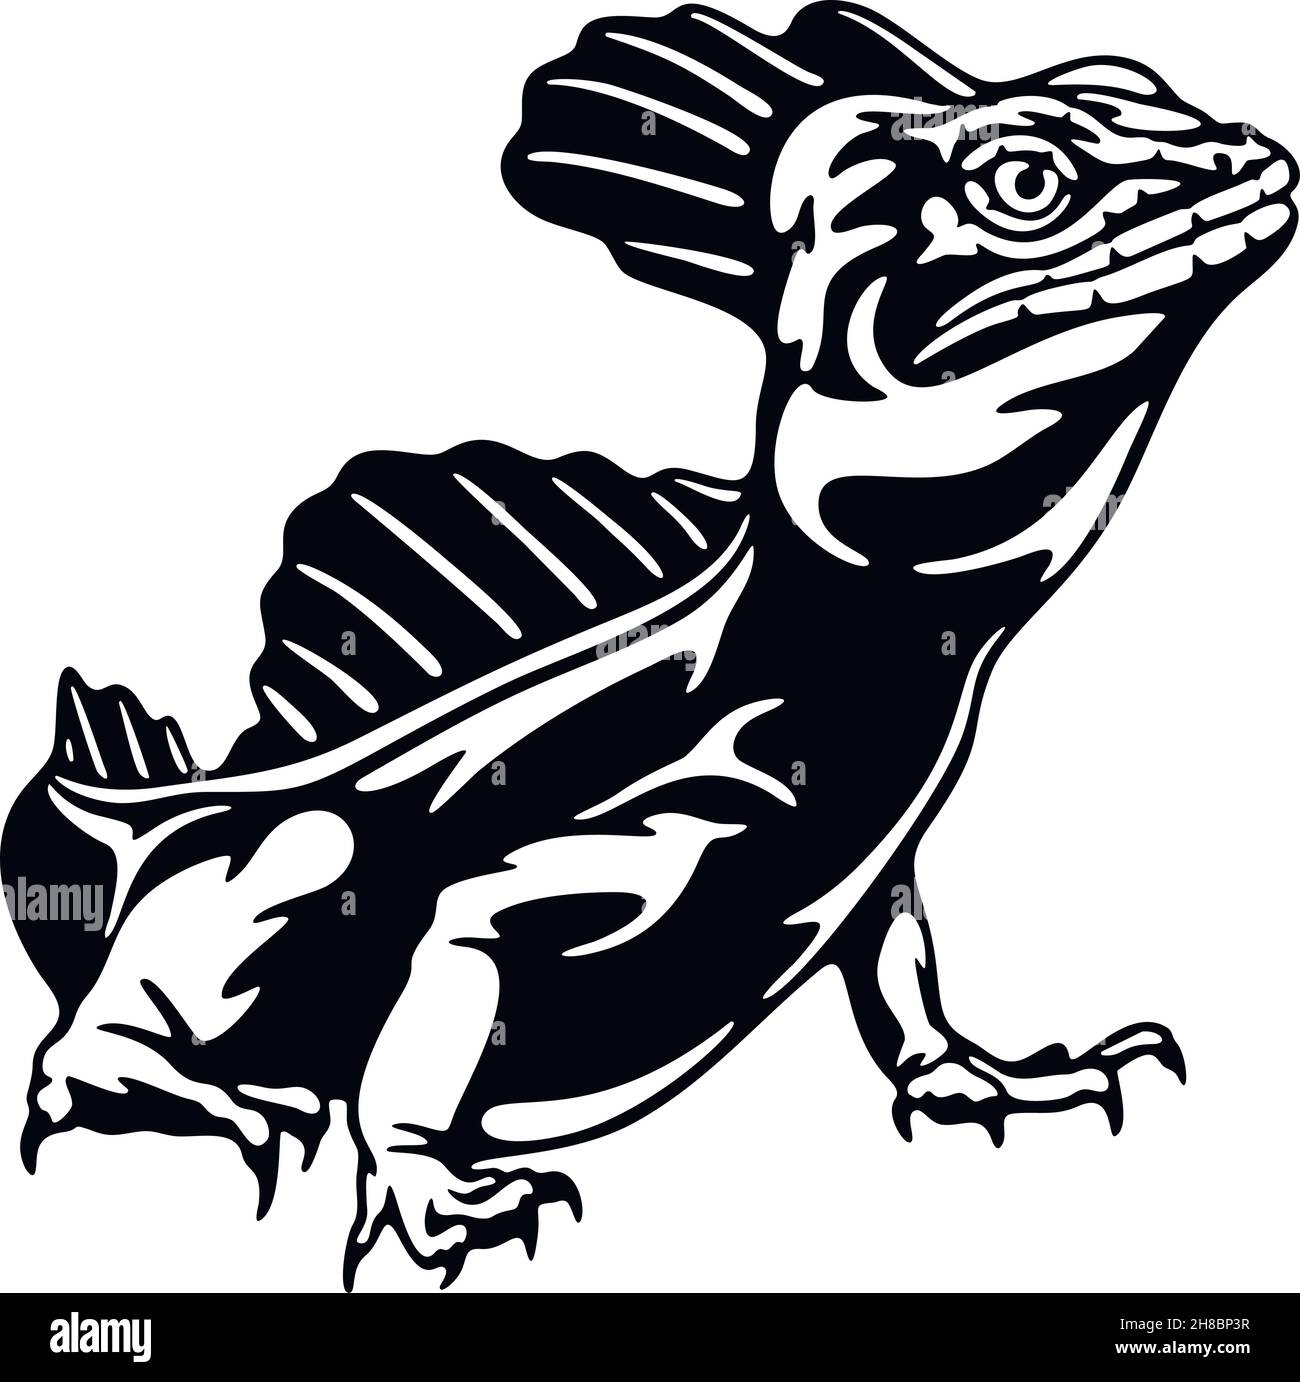 Iguana - Reptilien der Wildnis. Schablone für Wildtiere. Haustier und tropisches Tier. Vektorschablone. Stock Vektor